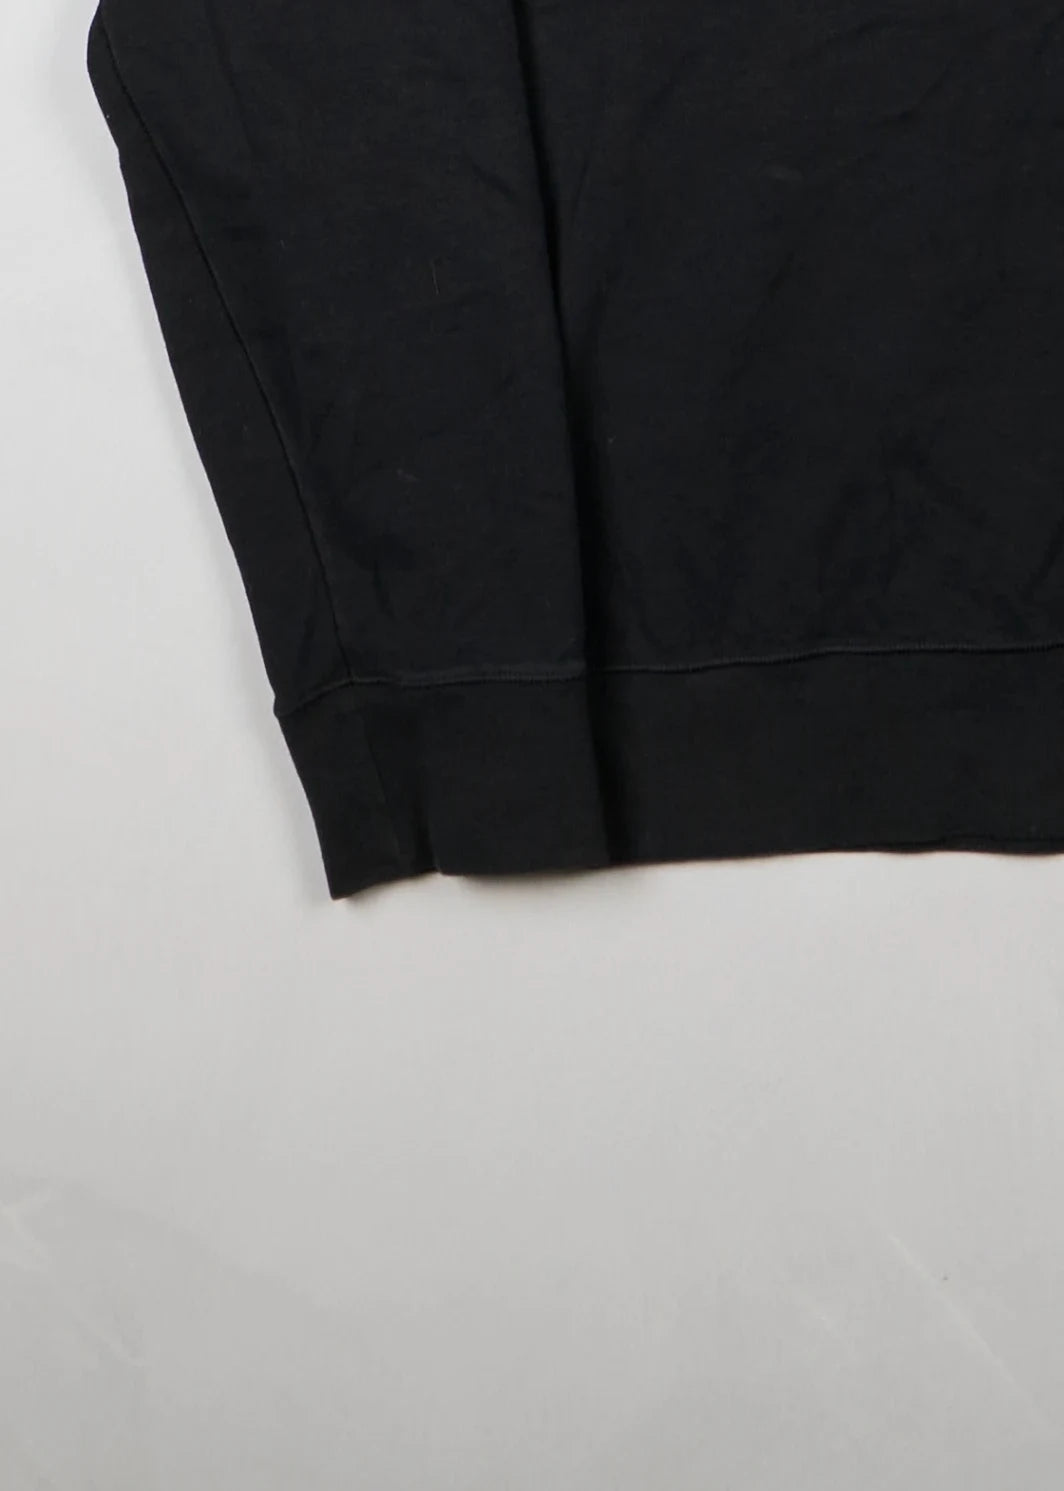 Ralph Lauren - Sweatshirt (M) Bottom Left